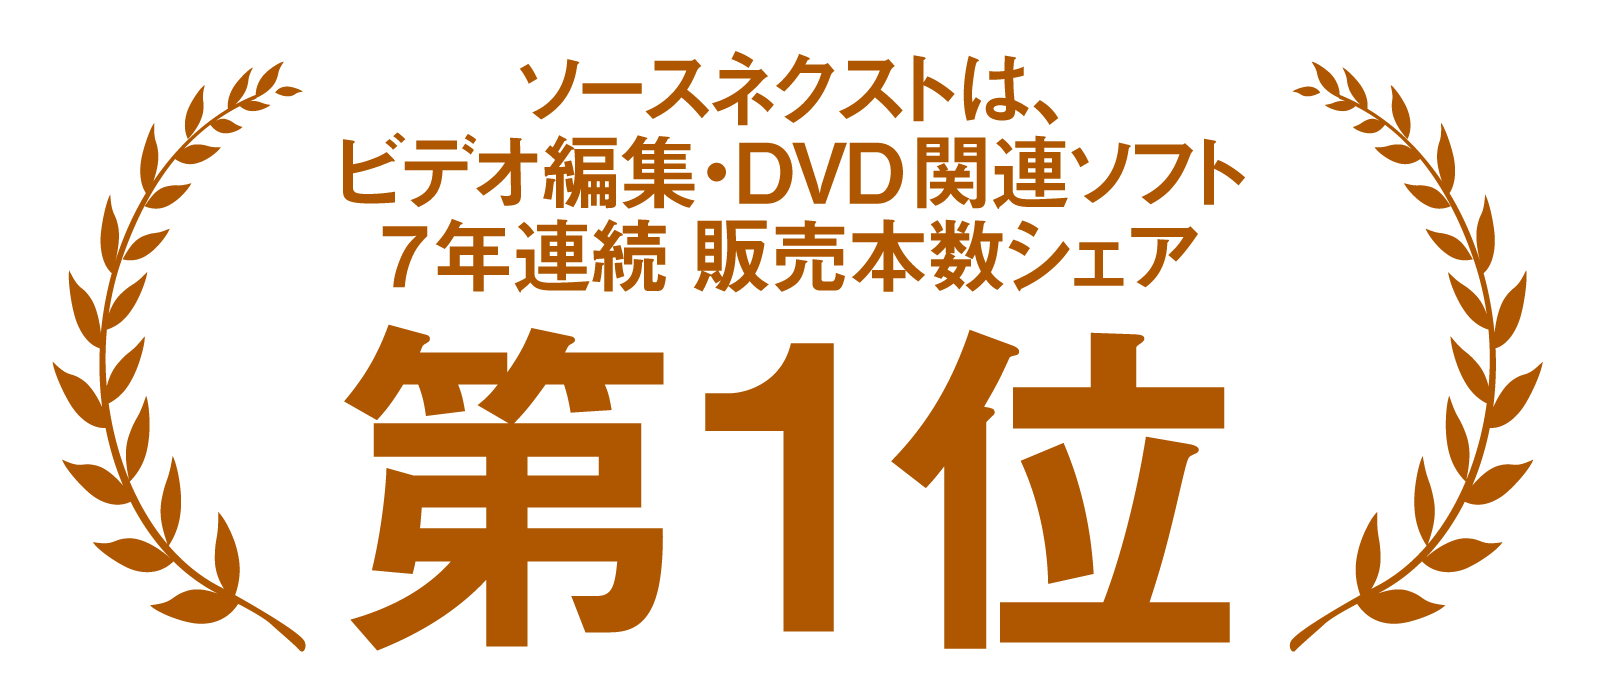 ソースネクストは、ビデオ編集・DVD関連ソフト7年連続 販売本数シェア第1位のロゴ画像